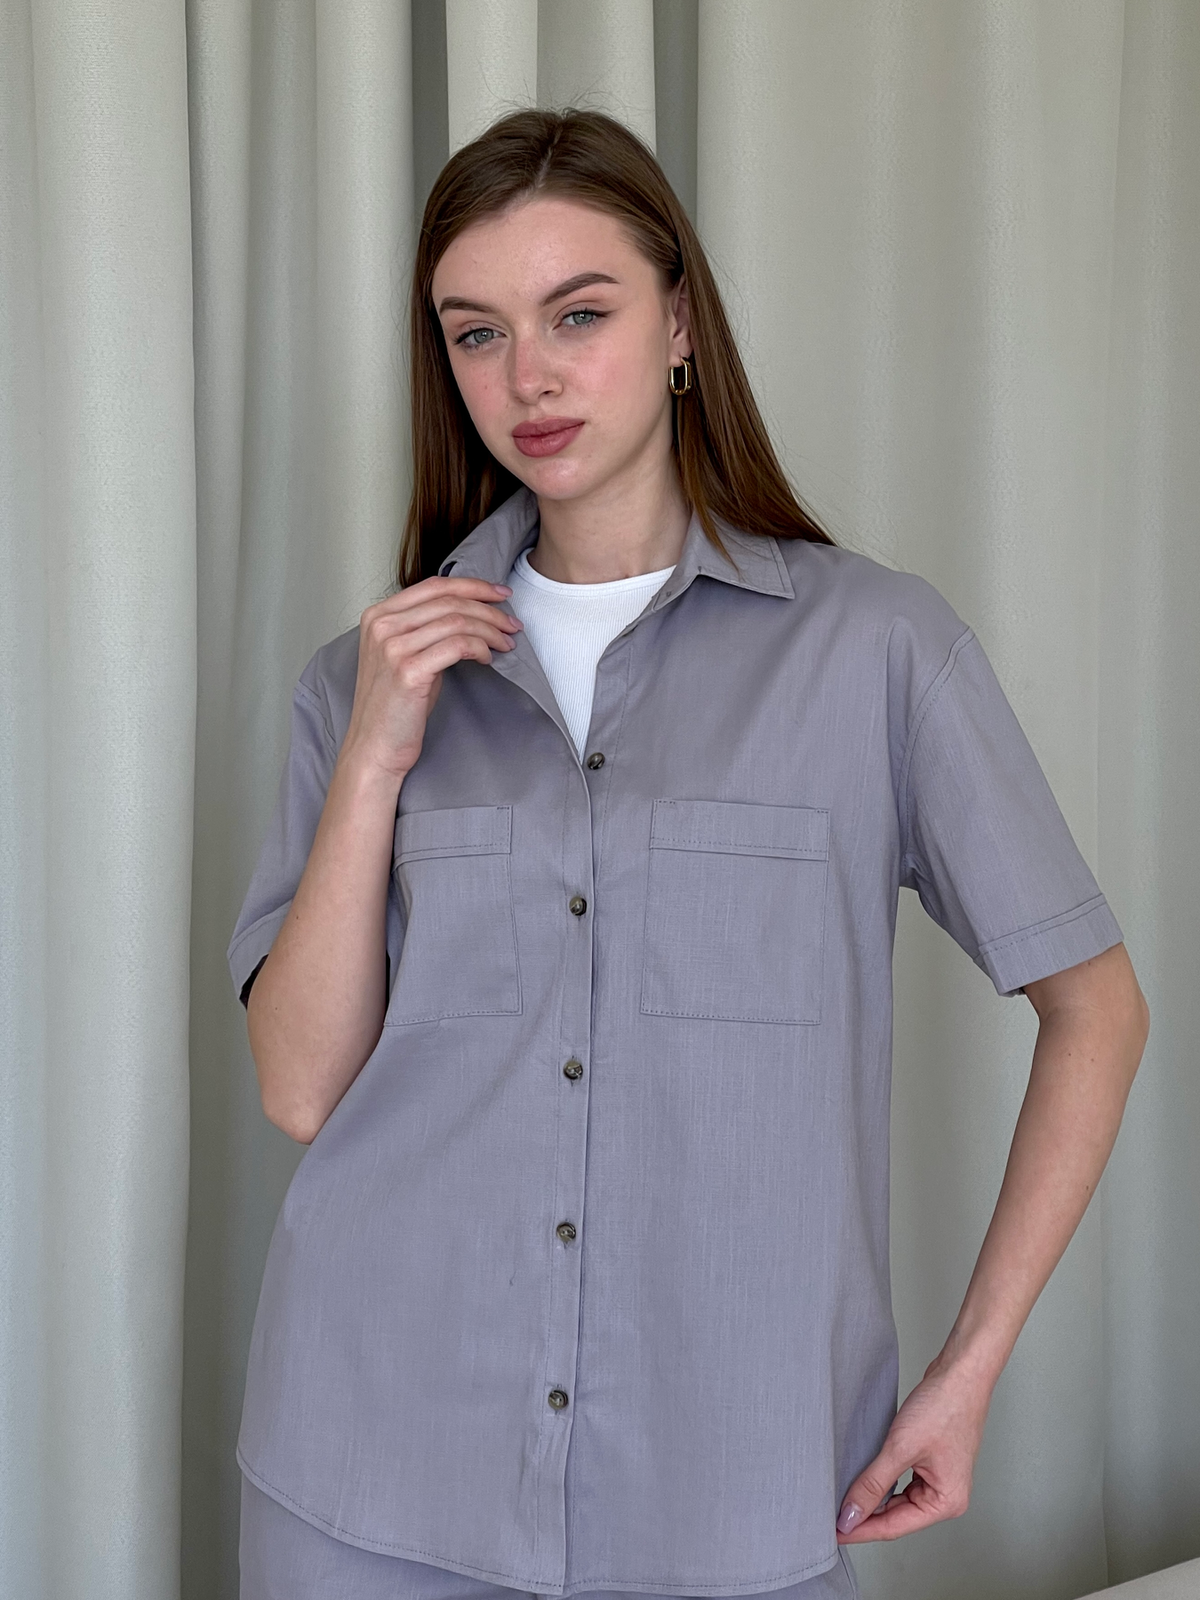 Купить Льняная рубашка с коротким рукавом серая Merlini Нино 200001203 размер 42-44 (S-M) в интернет-магазине